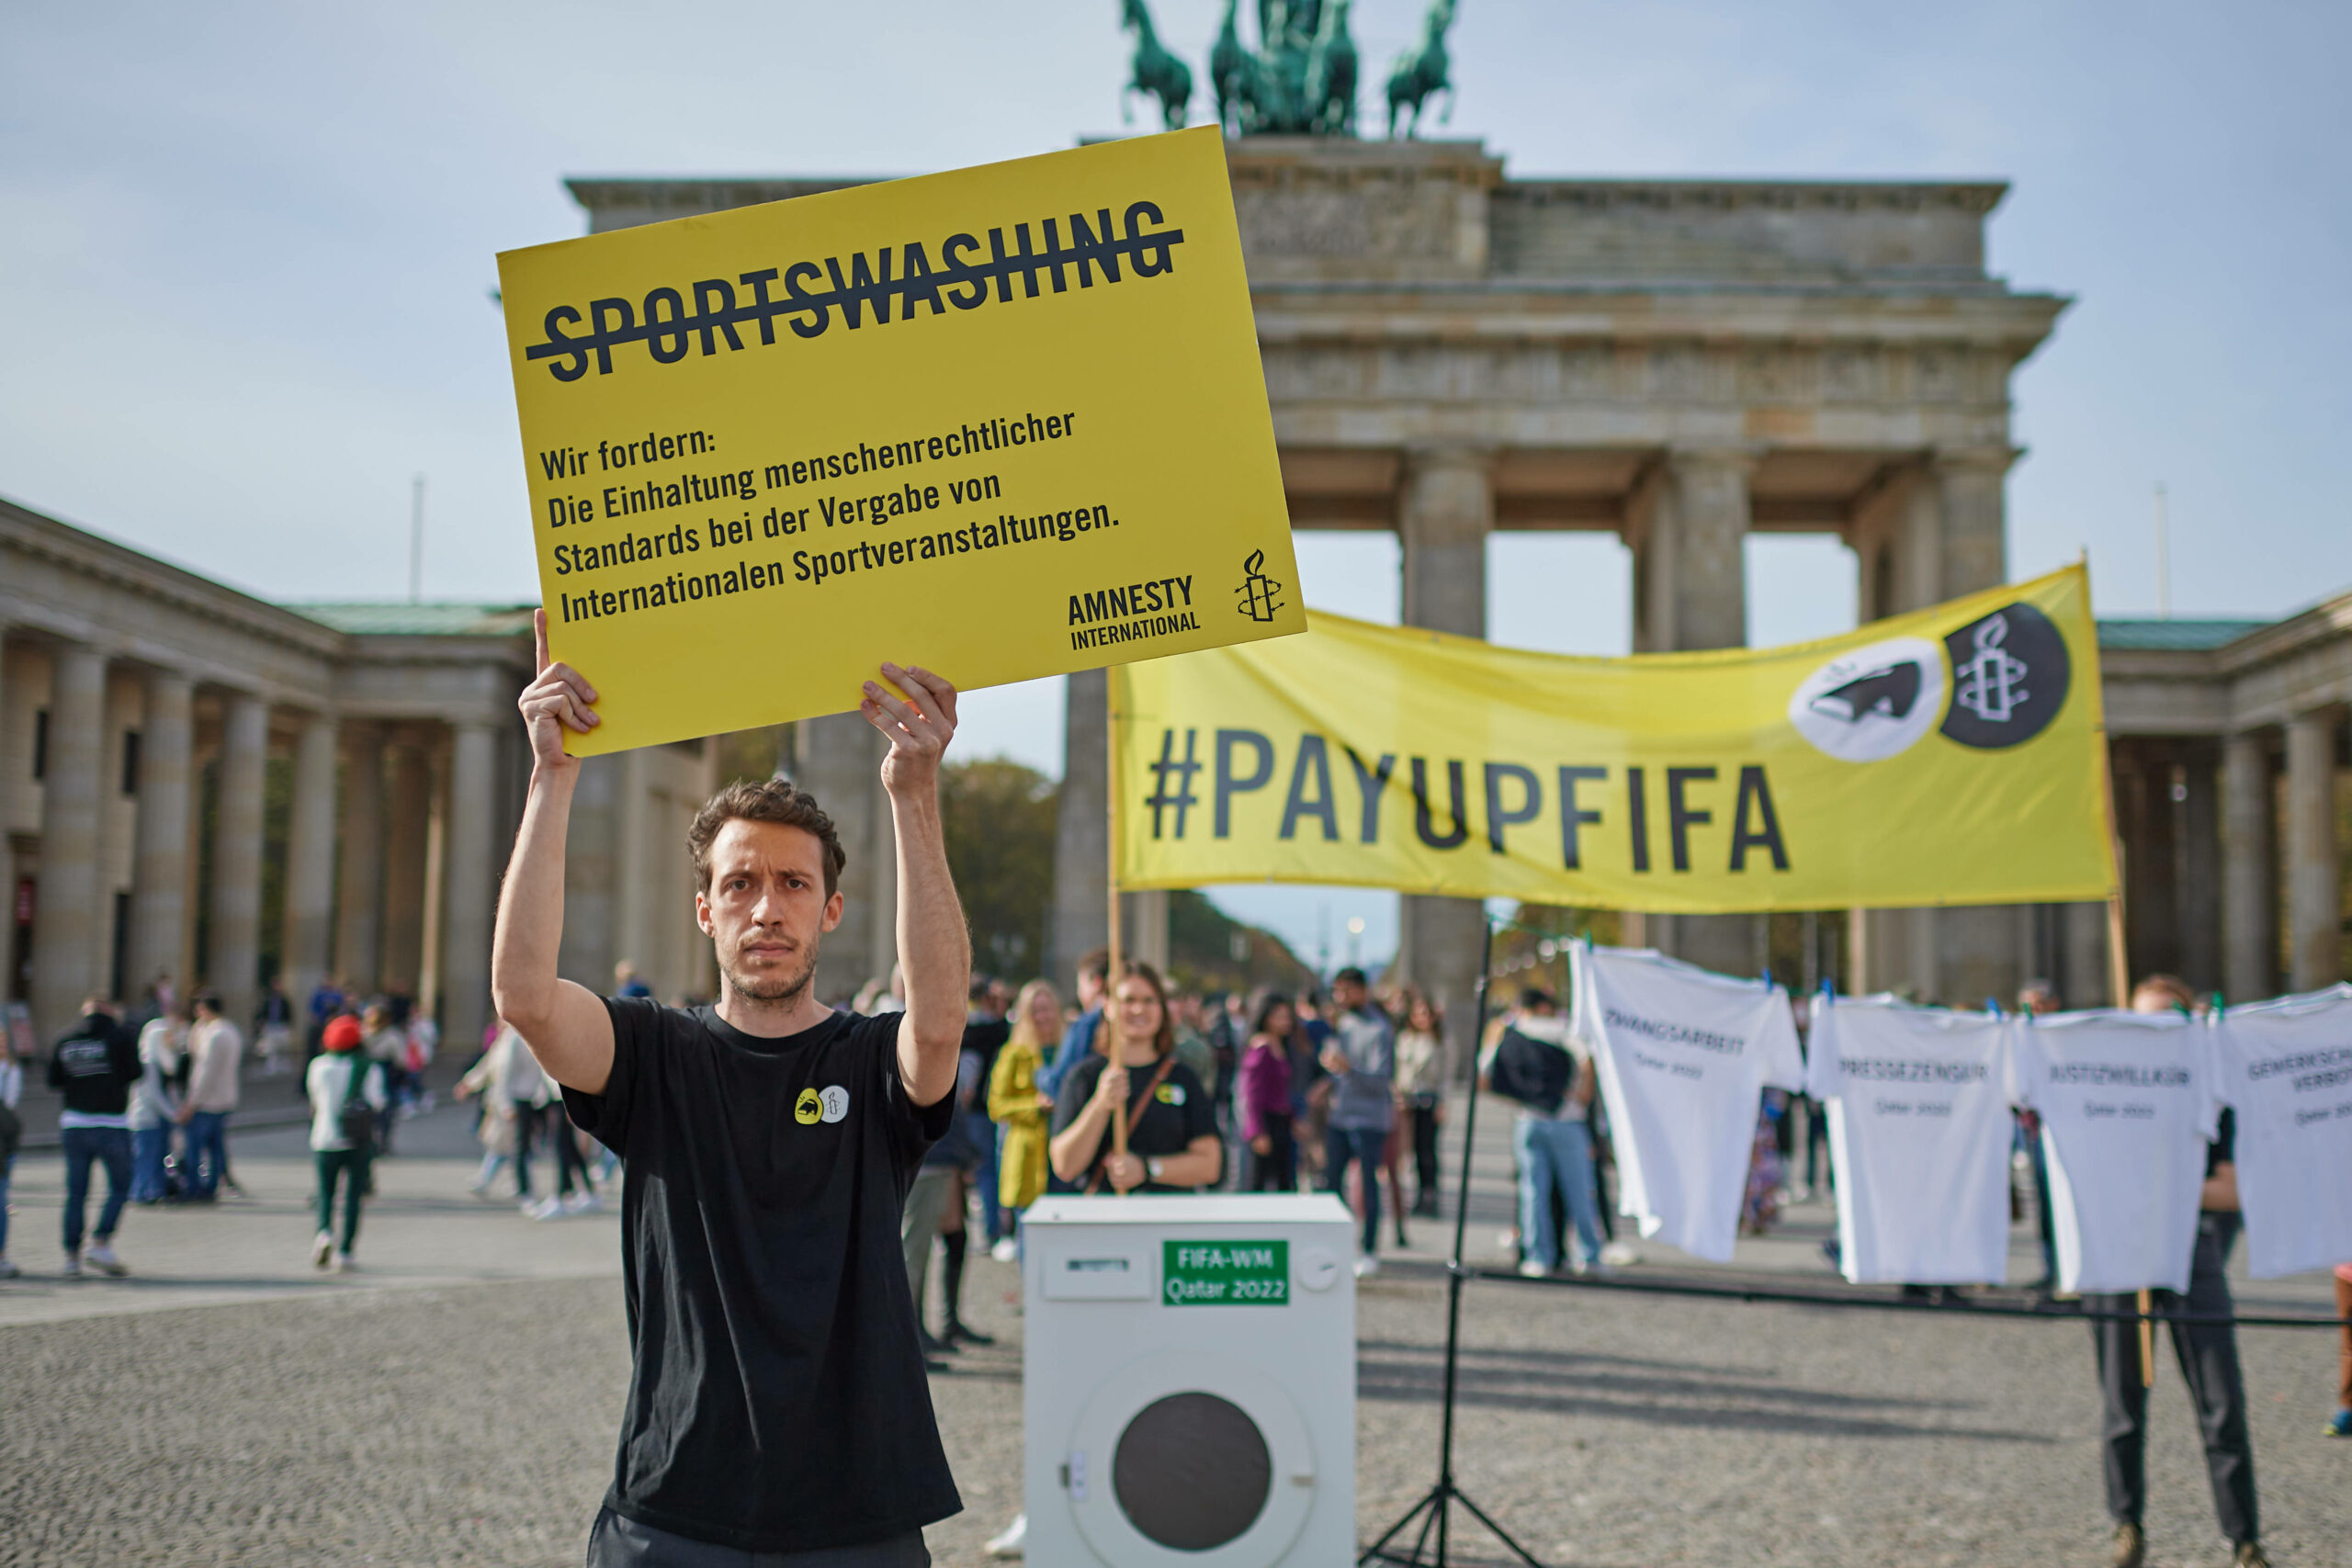 Menschenrechtsorganisationen kritisieren das Verhalten der FIFA